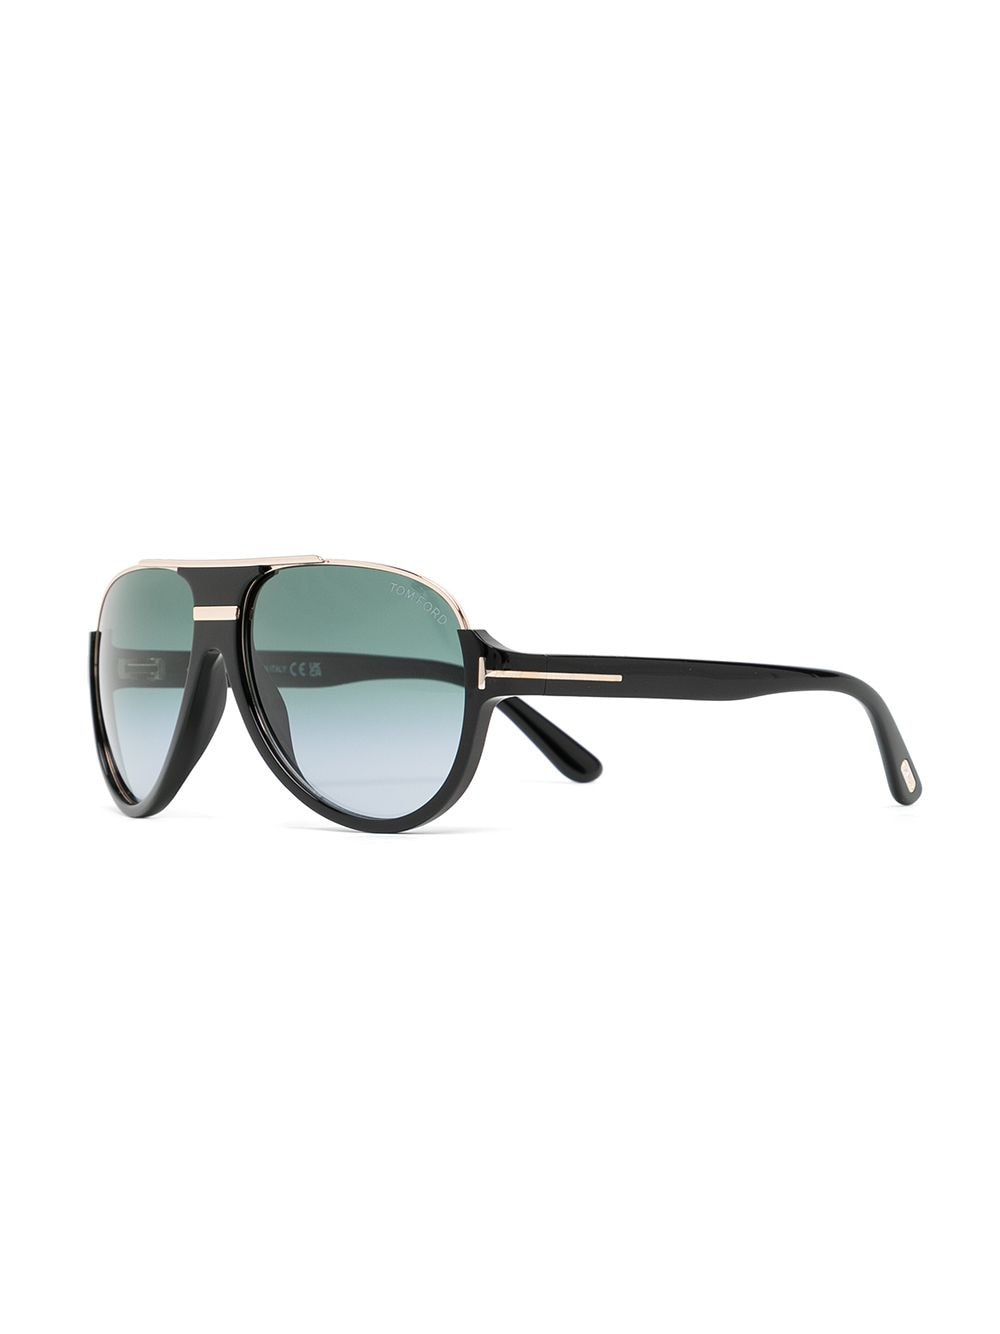 Tom Ford Eyewear Pilot Frame Sunglasses Farfetch